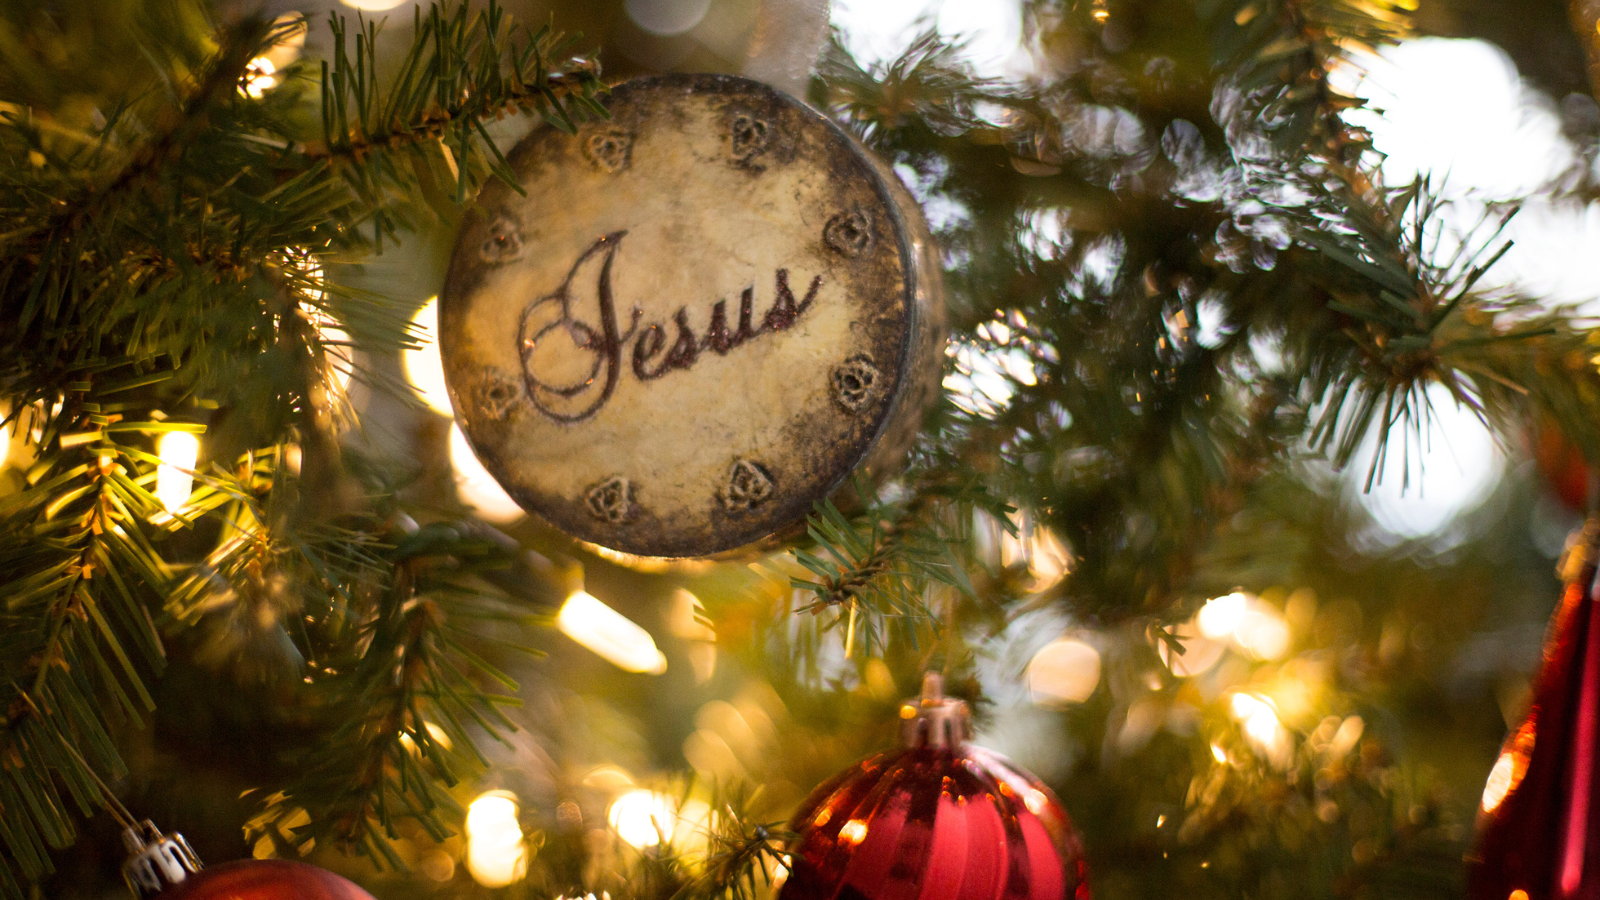 A Jesus ornament on a Christmas tree.